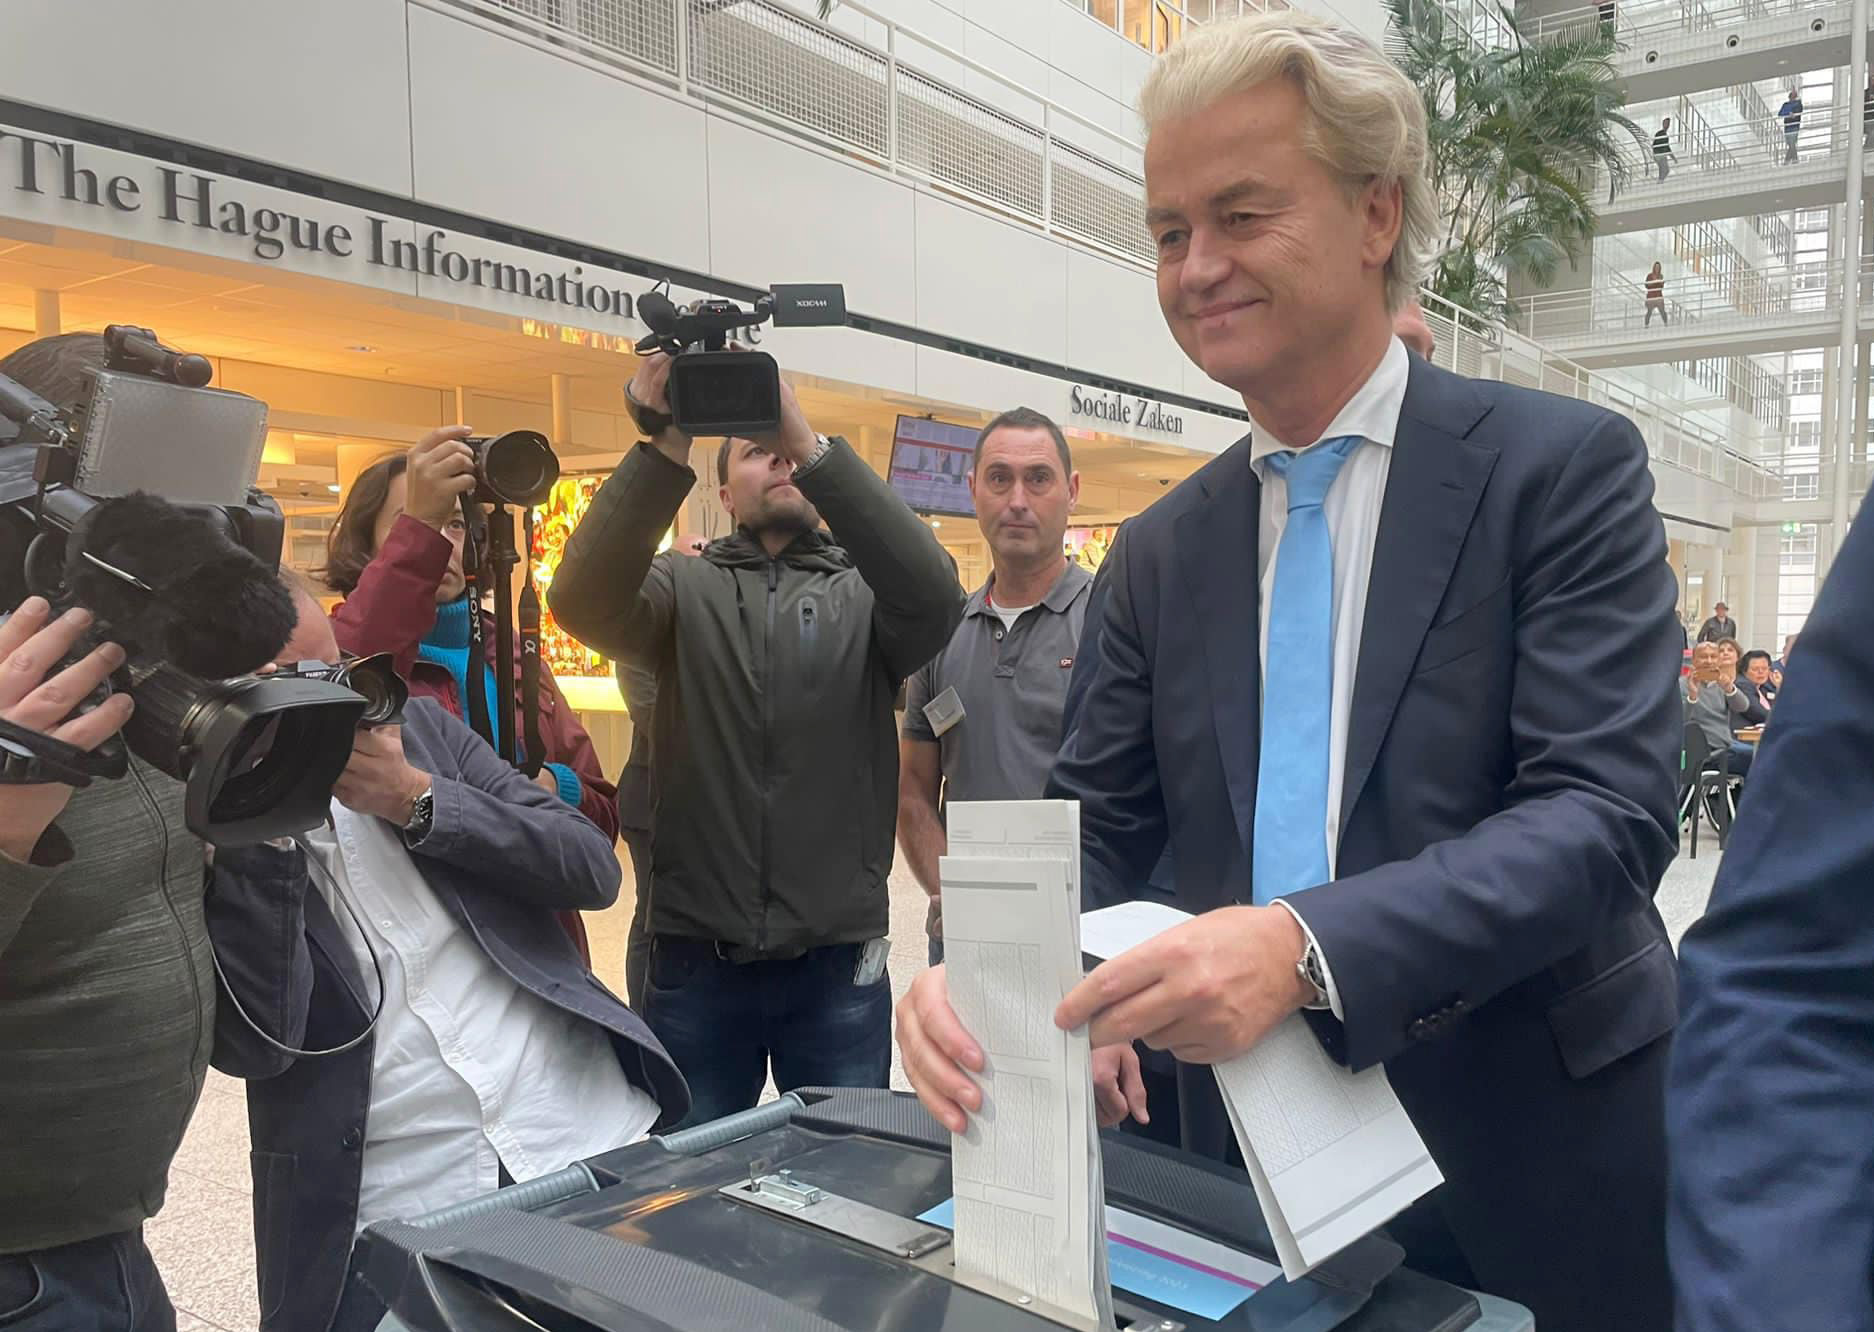 Hollanda'da Yeşilgöz'ün açıklamaları Başbakan olma hayalleri kuran Wilders'da şok etkisi yarattı